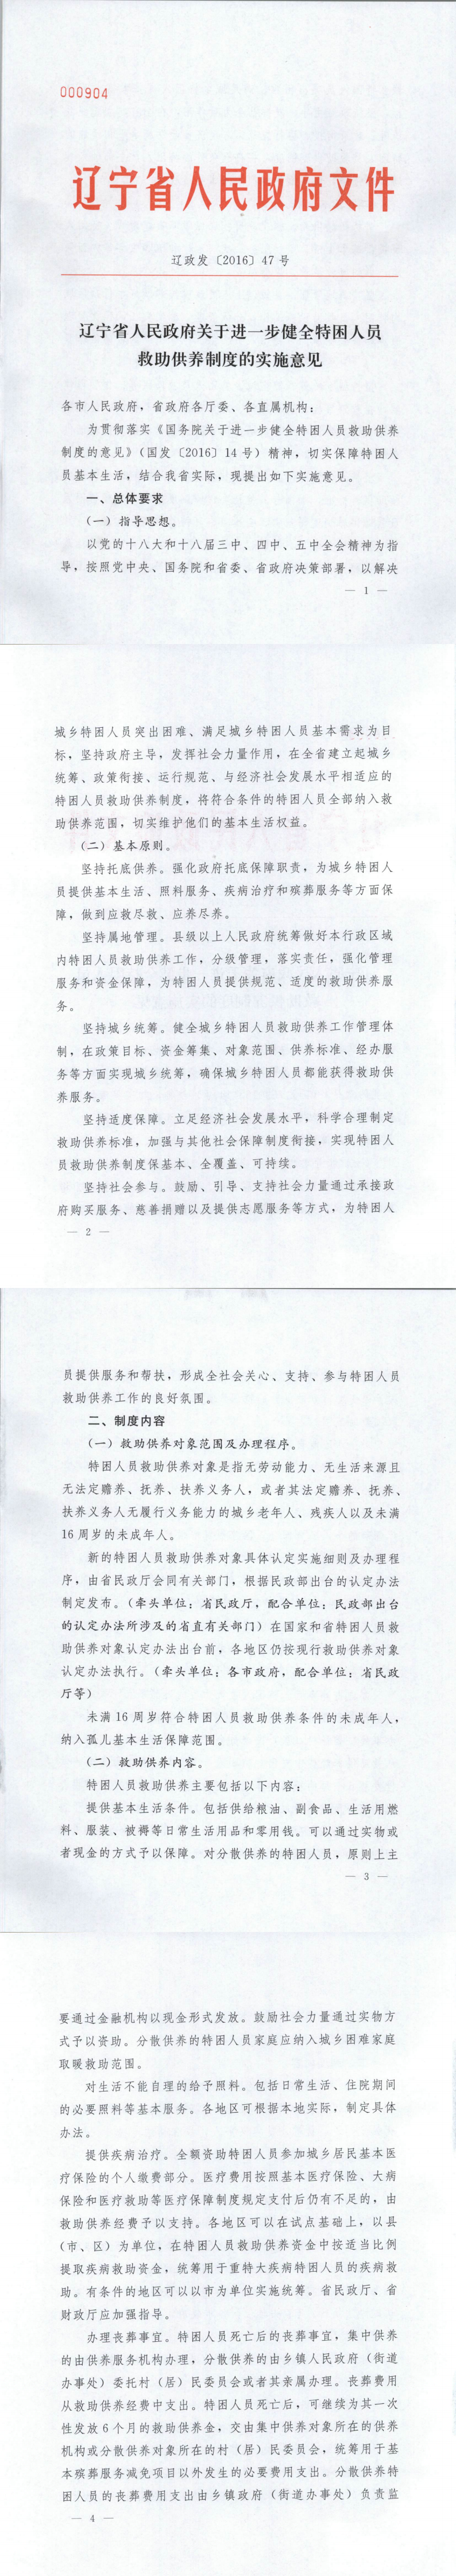 辽宁省人民政府关于进一步健全特困人员救助供养制度的实施意见1.png